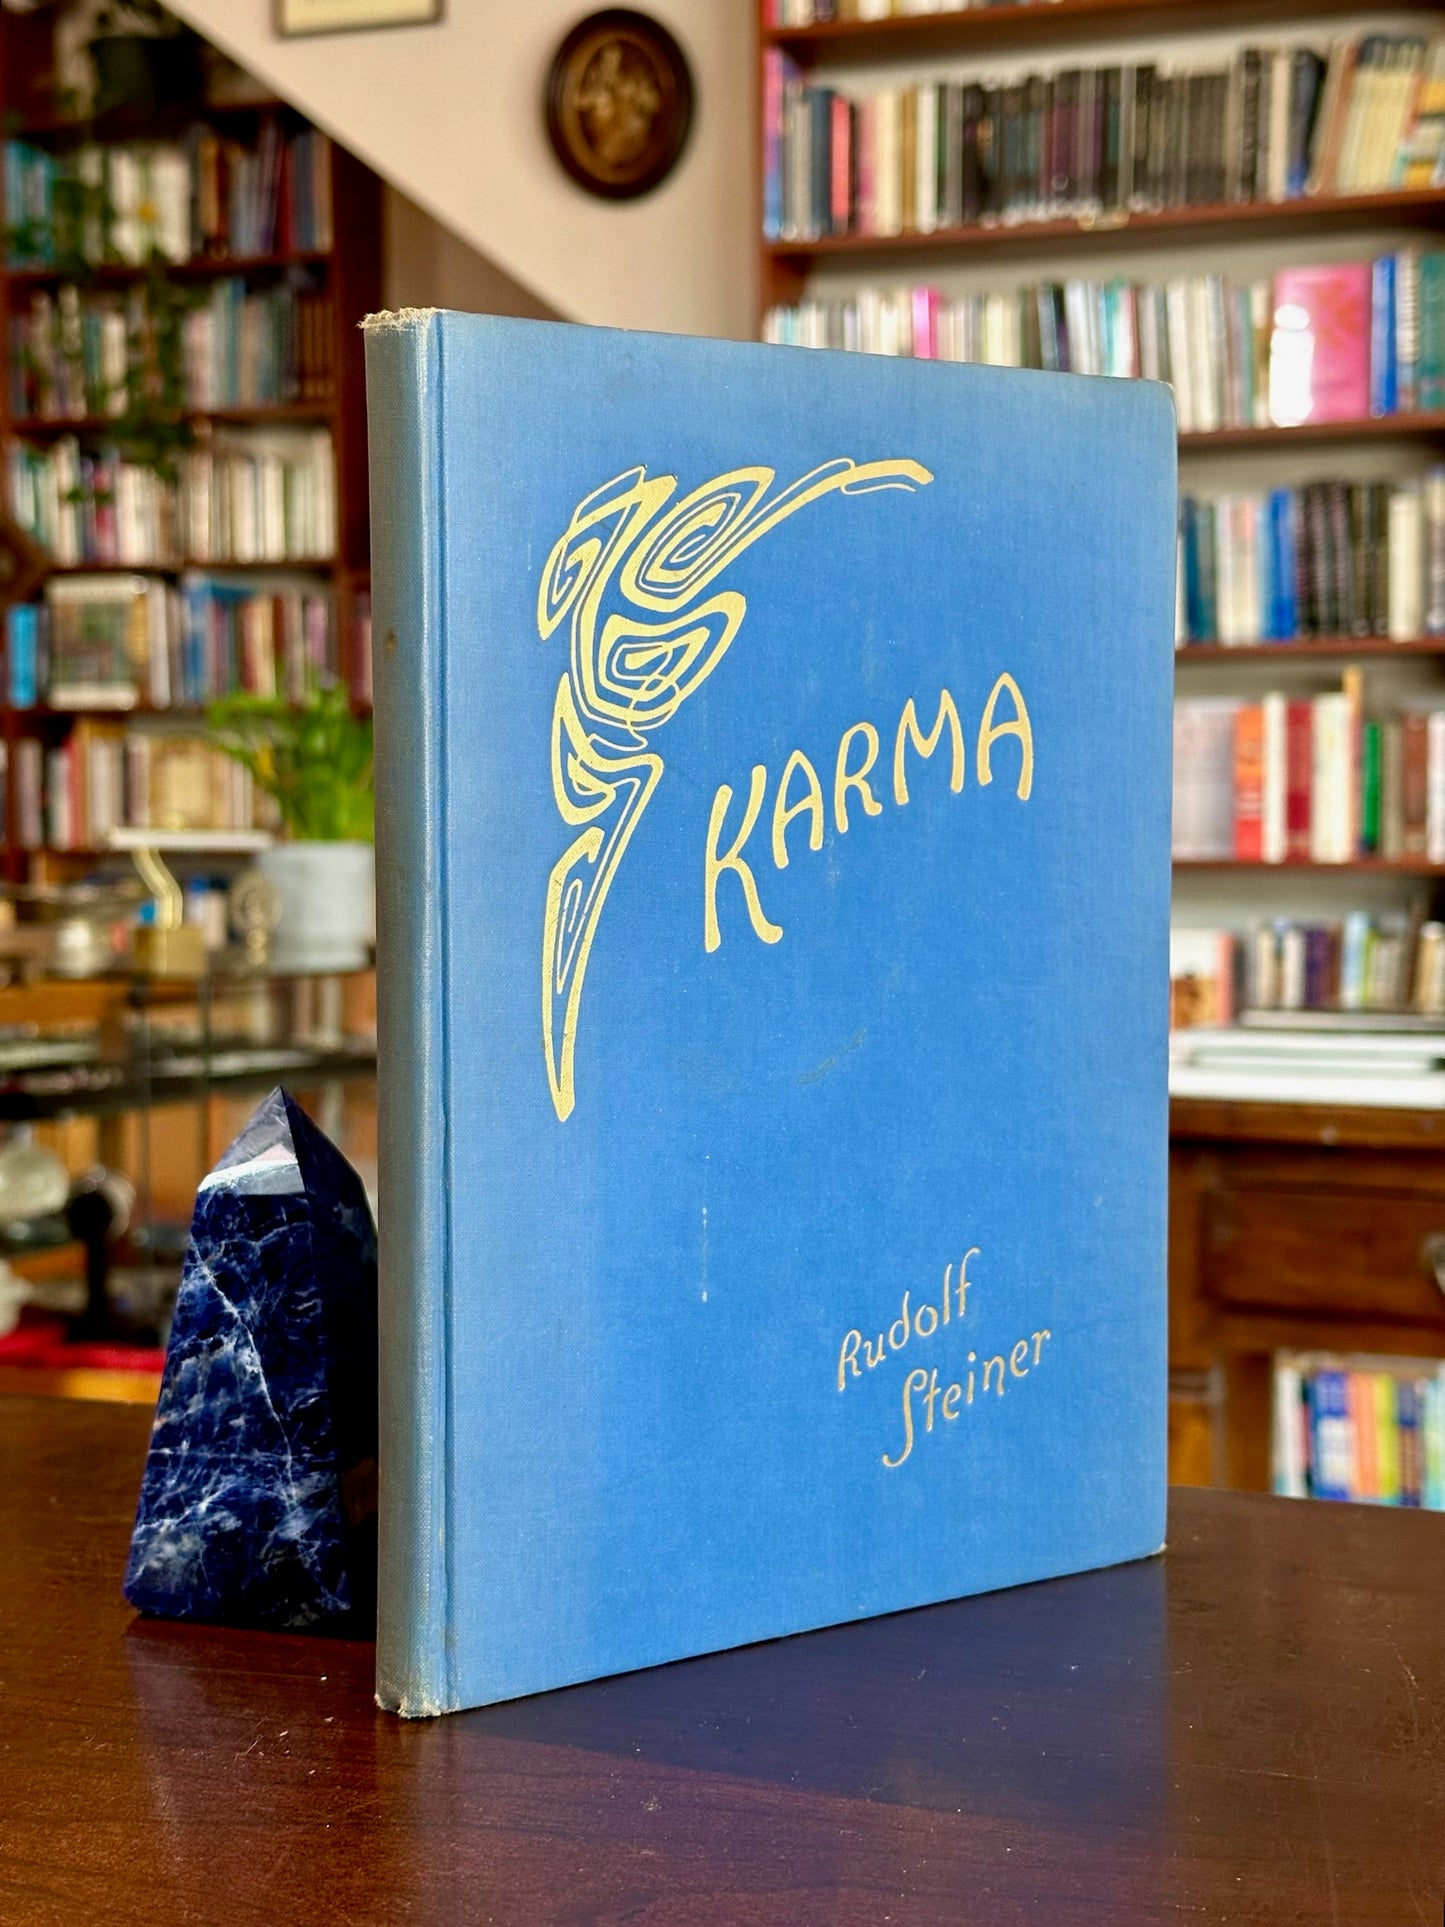 Karma by Rudolf Steiner